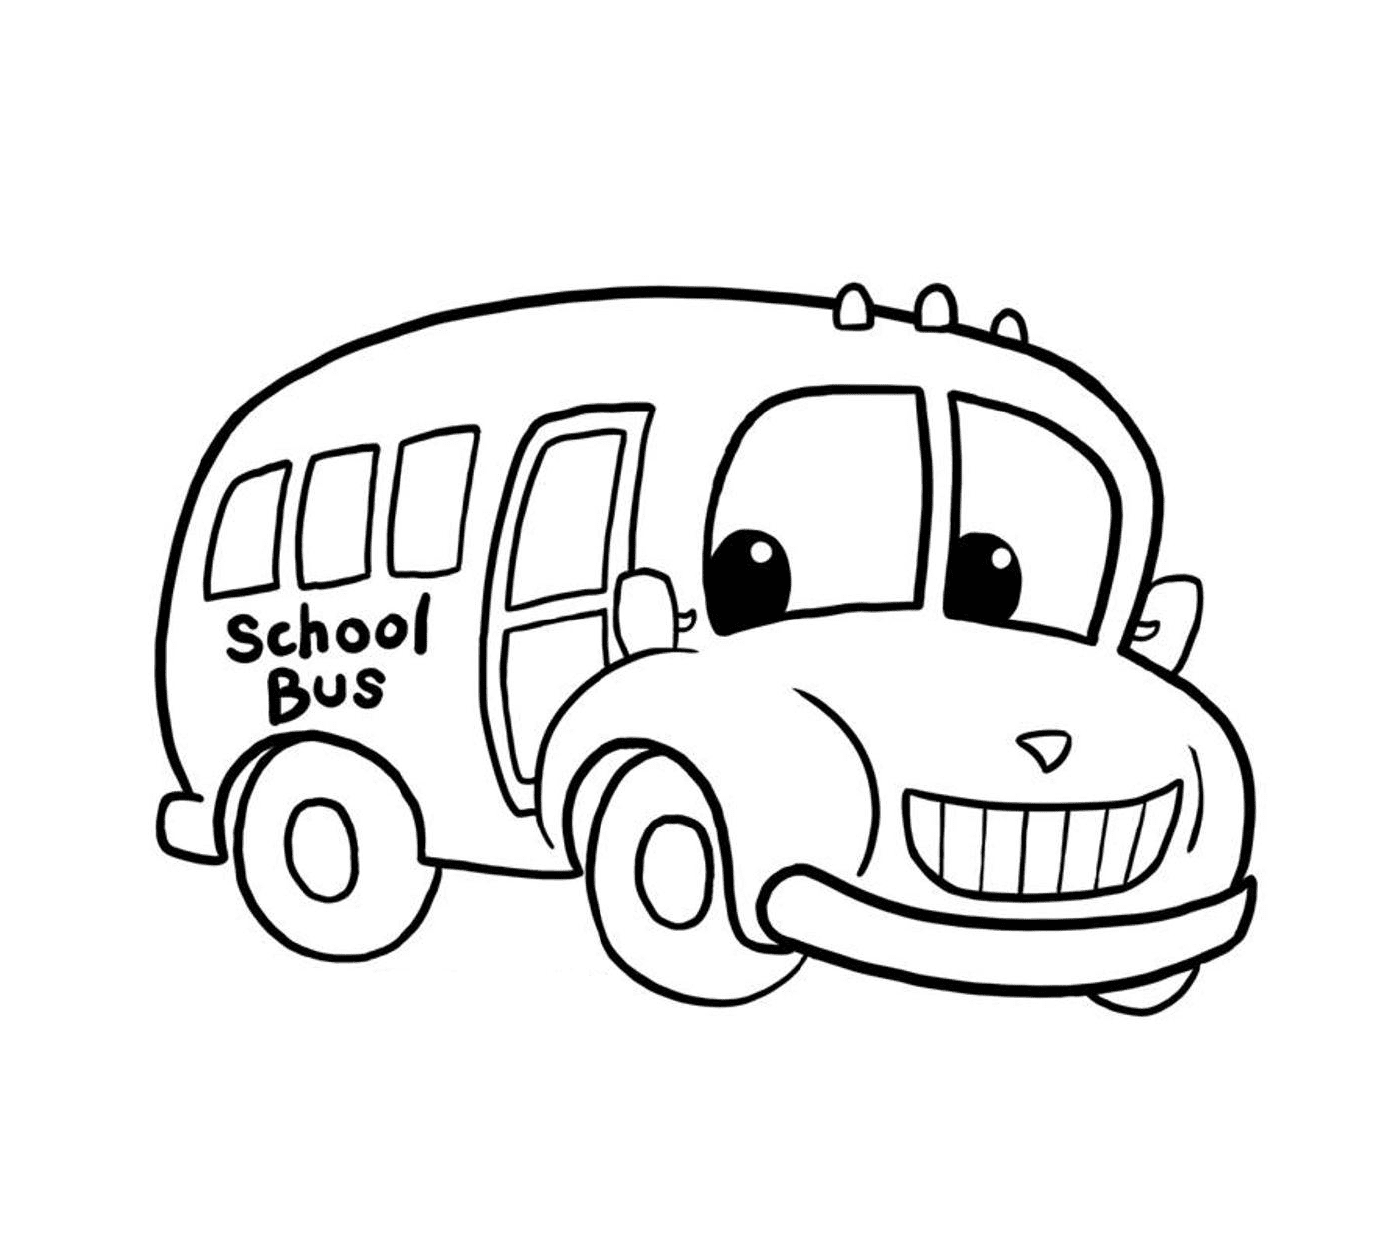  Um ônibus escolar transporta as crianças 